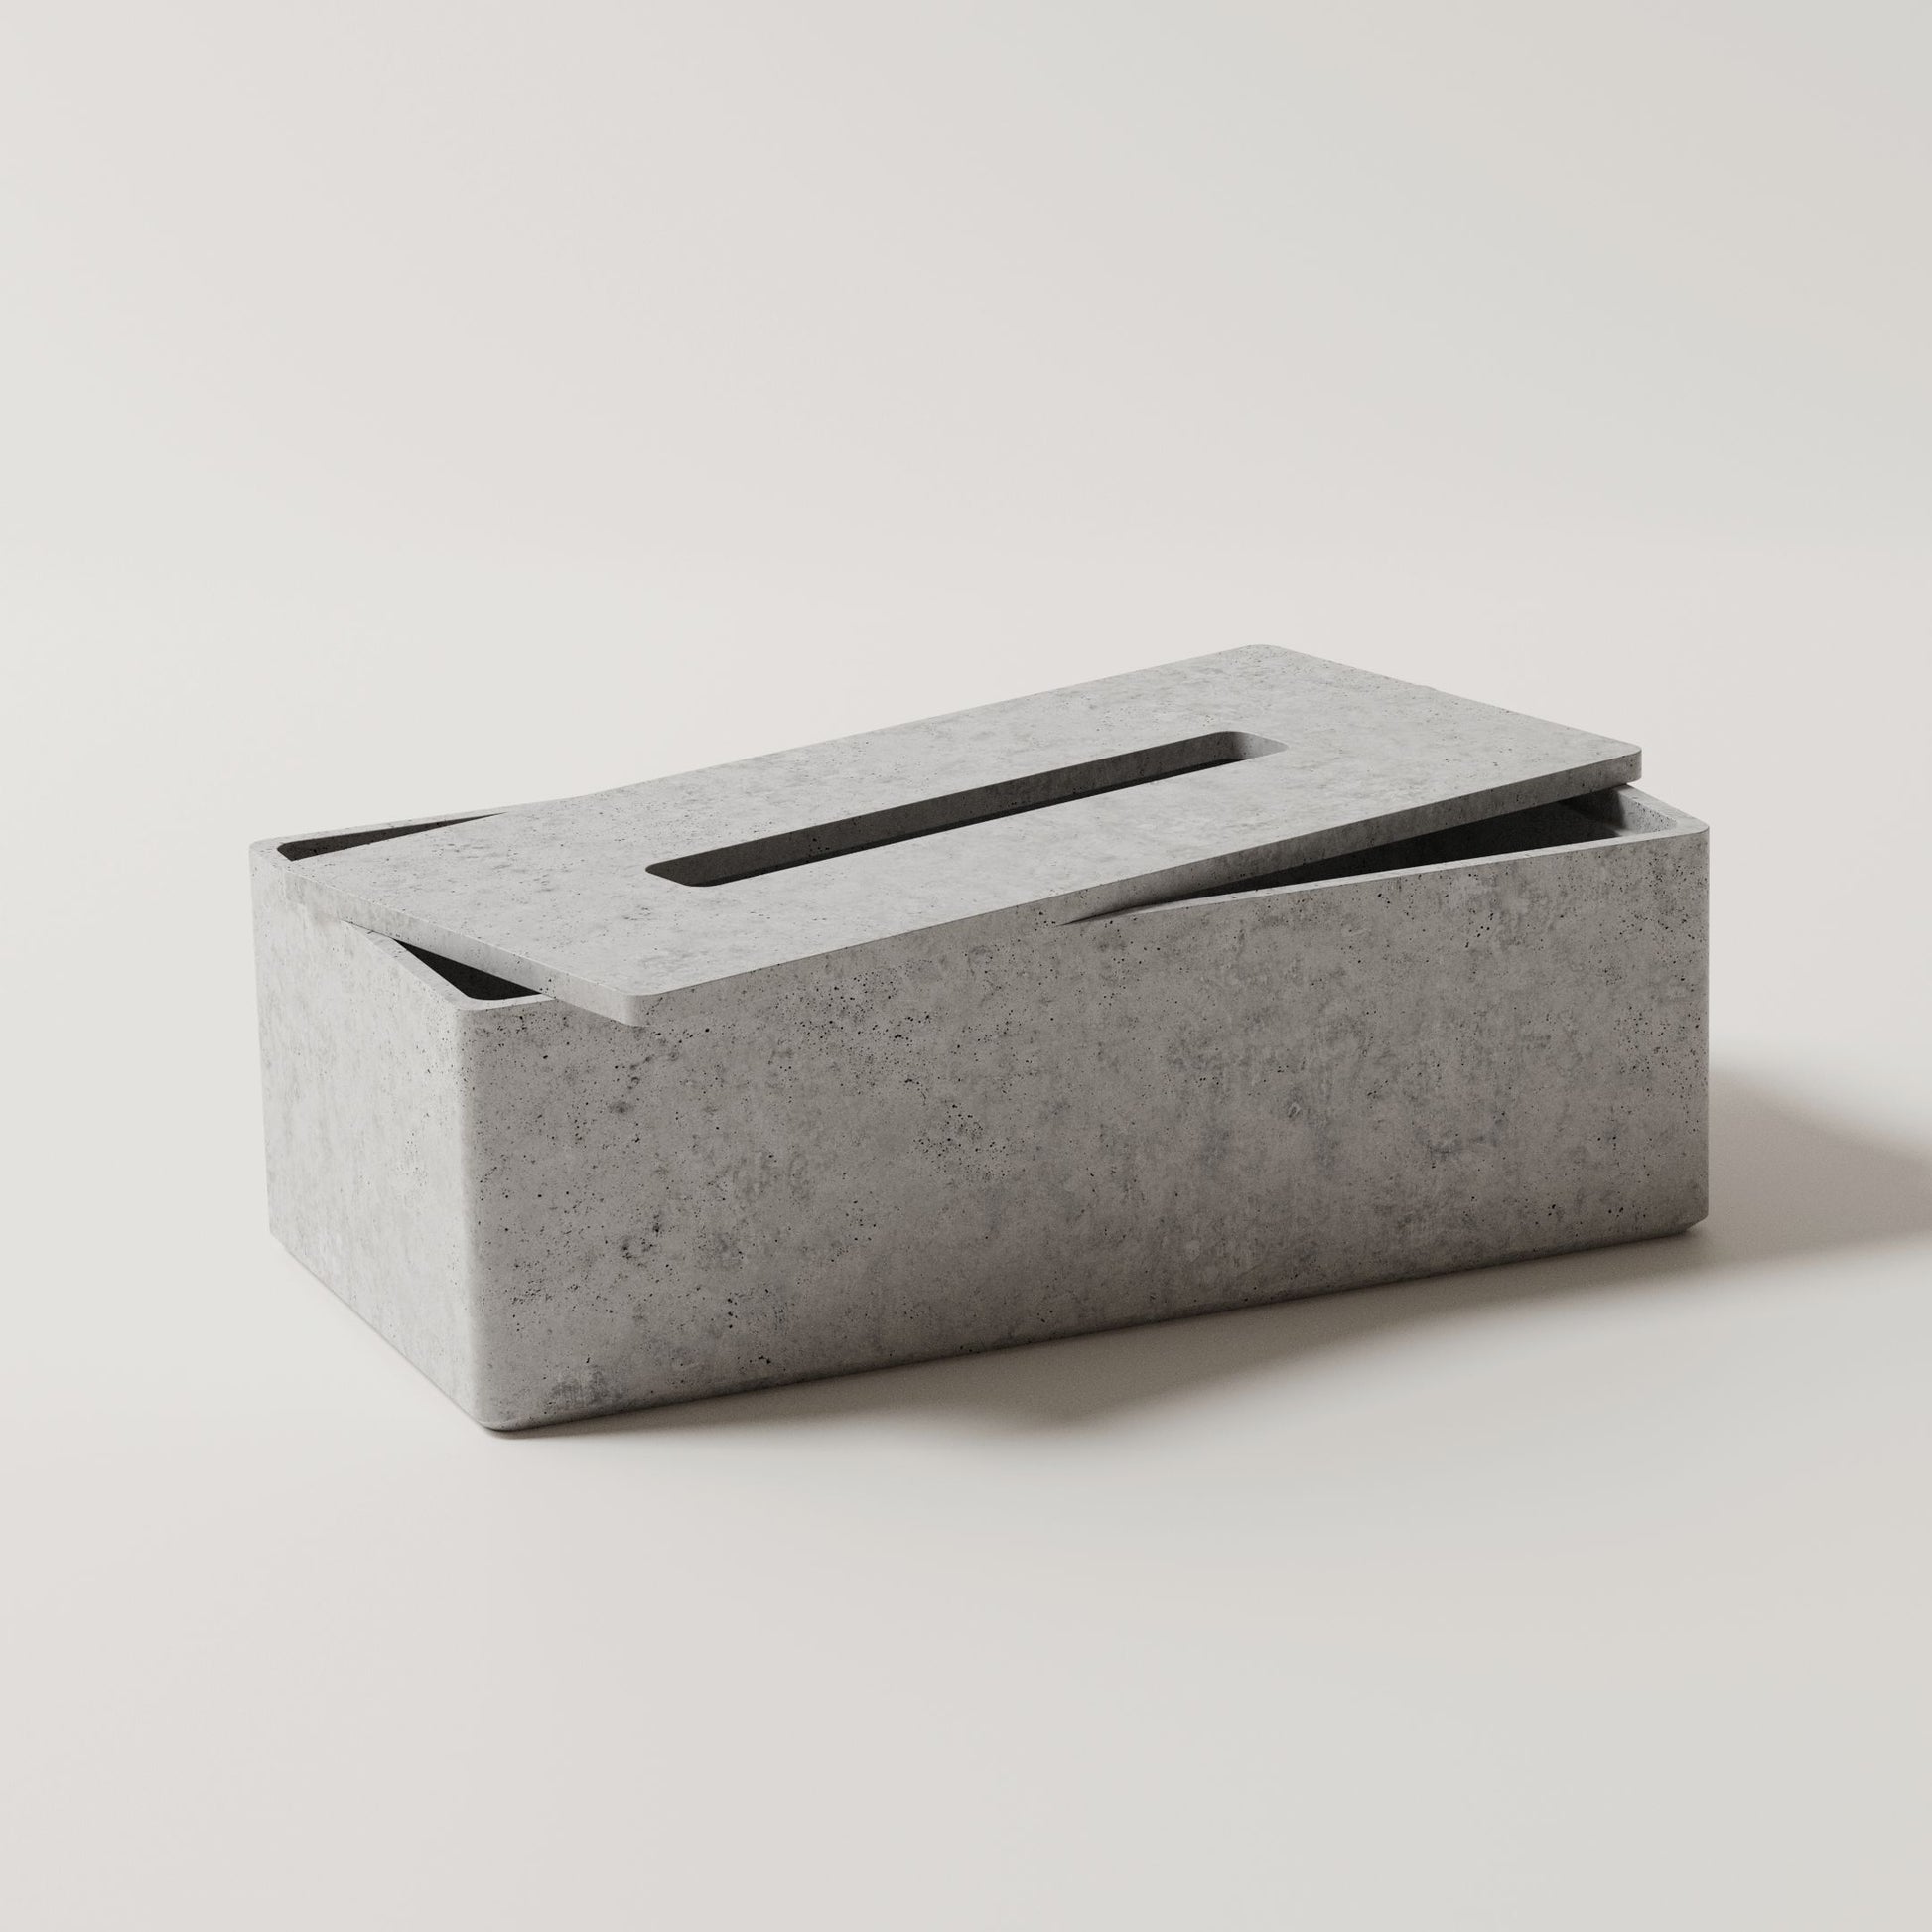 Originálny box na vreckovky Mooneton vyrobený z vysokopevnostného betónu s otváracím vekom. Farba - Šedá